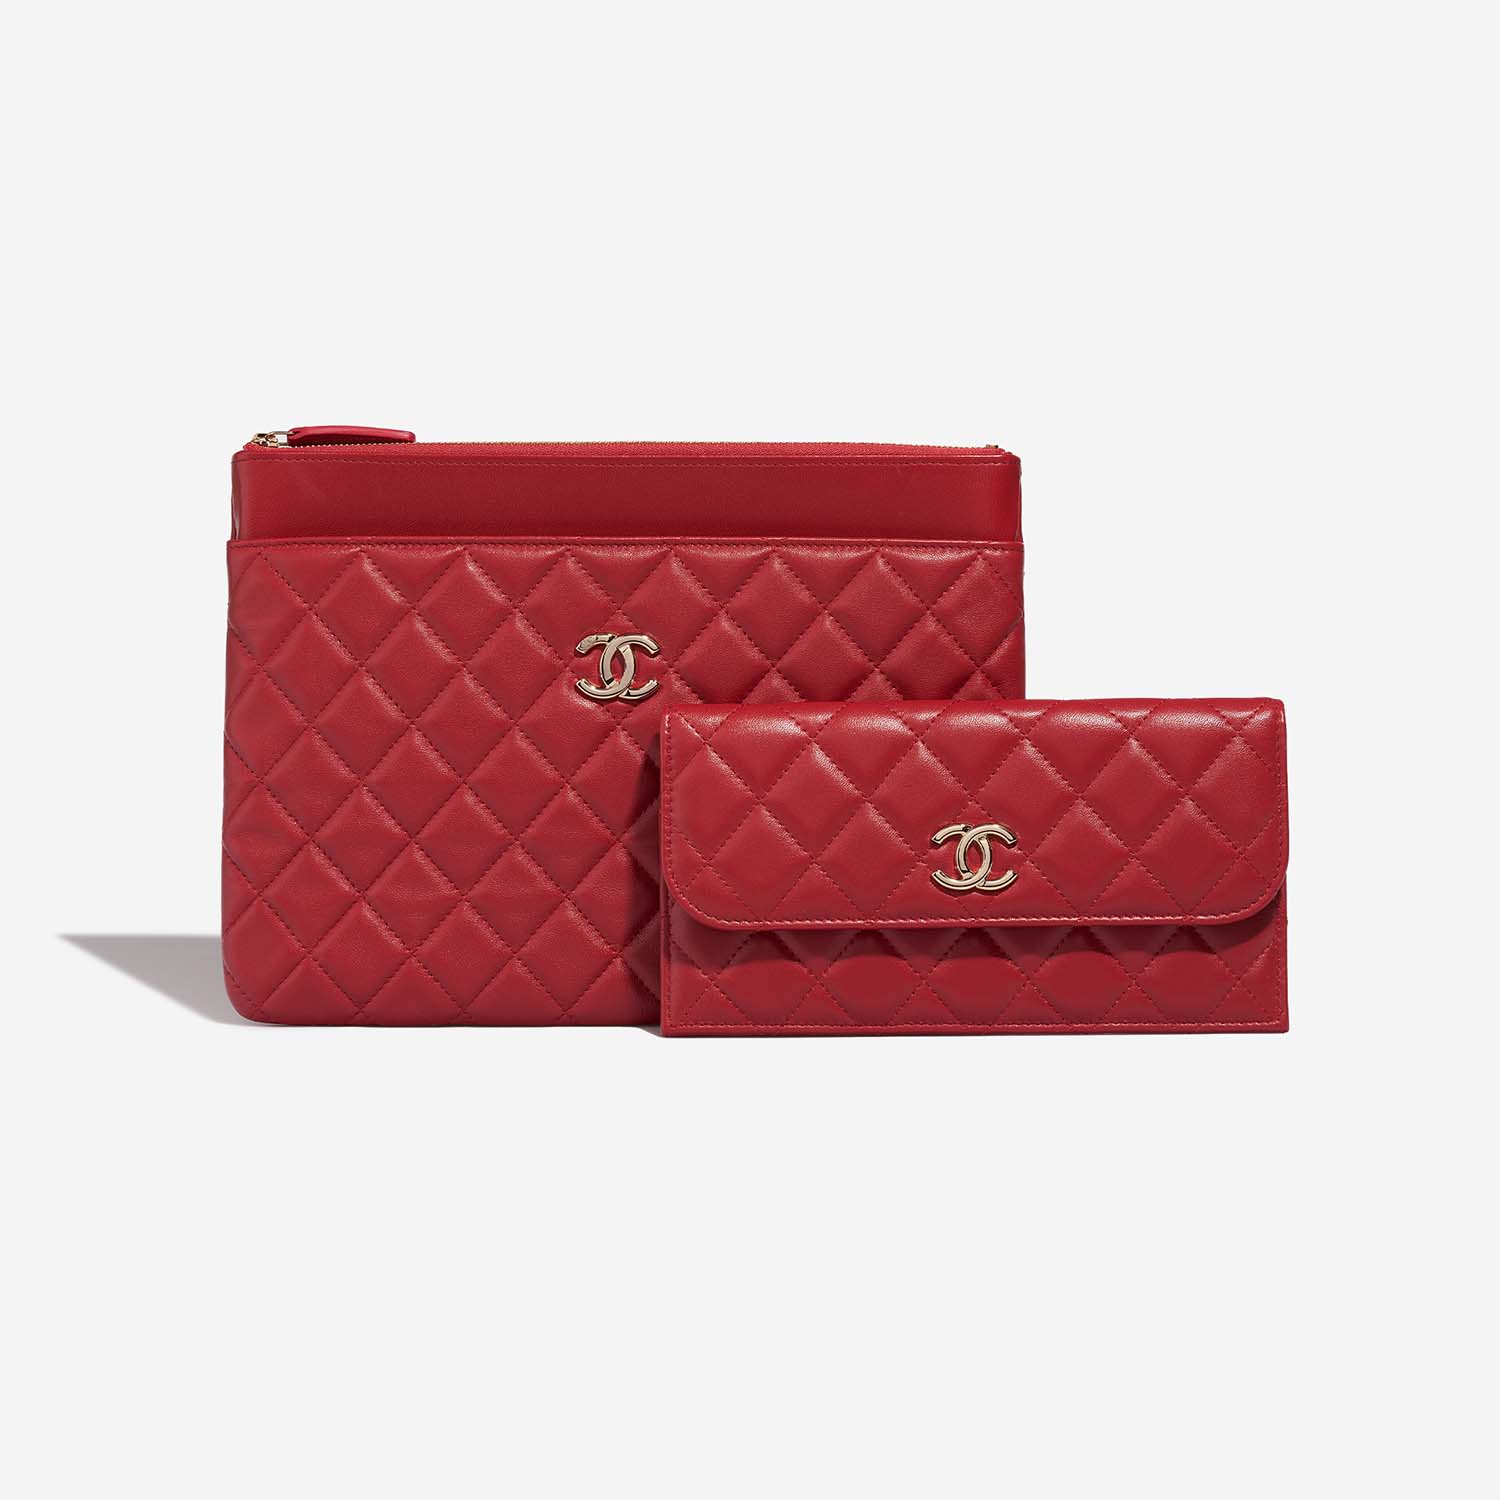 Chanel Timeless Clutch Rot 2F 1 S | Verkaufen Sie Ihre Designer-Tasche auf Saclab.com